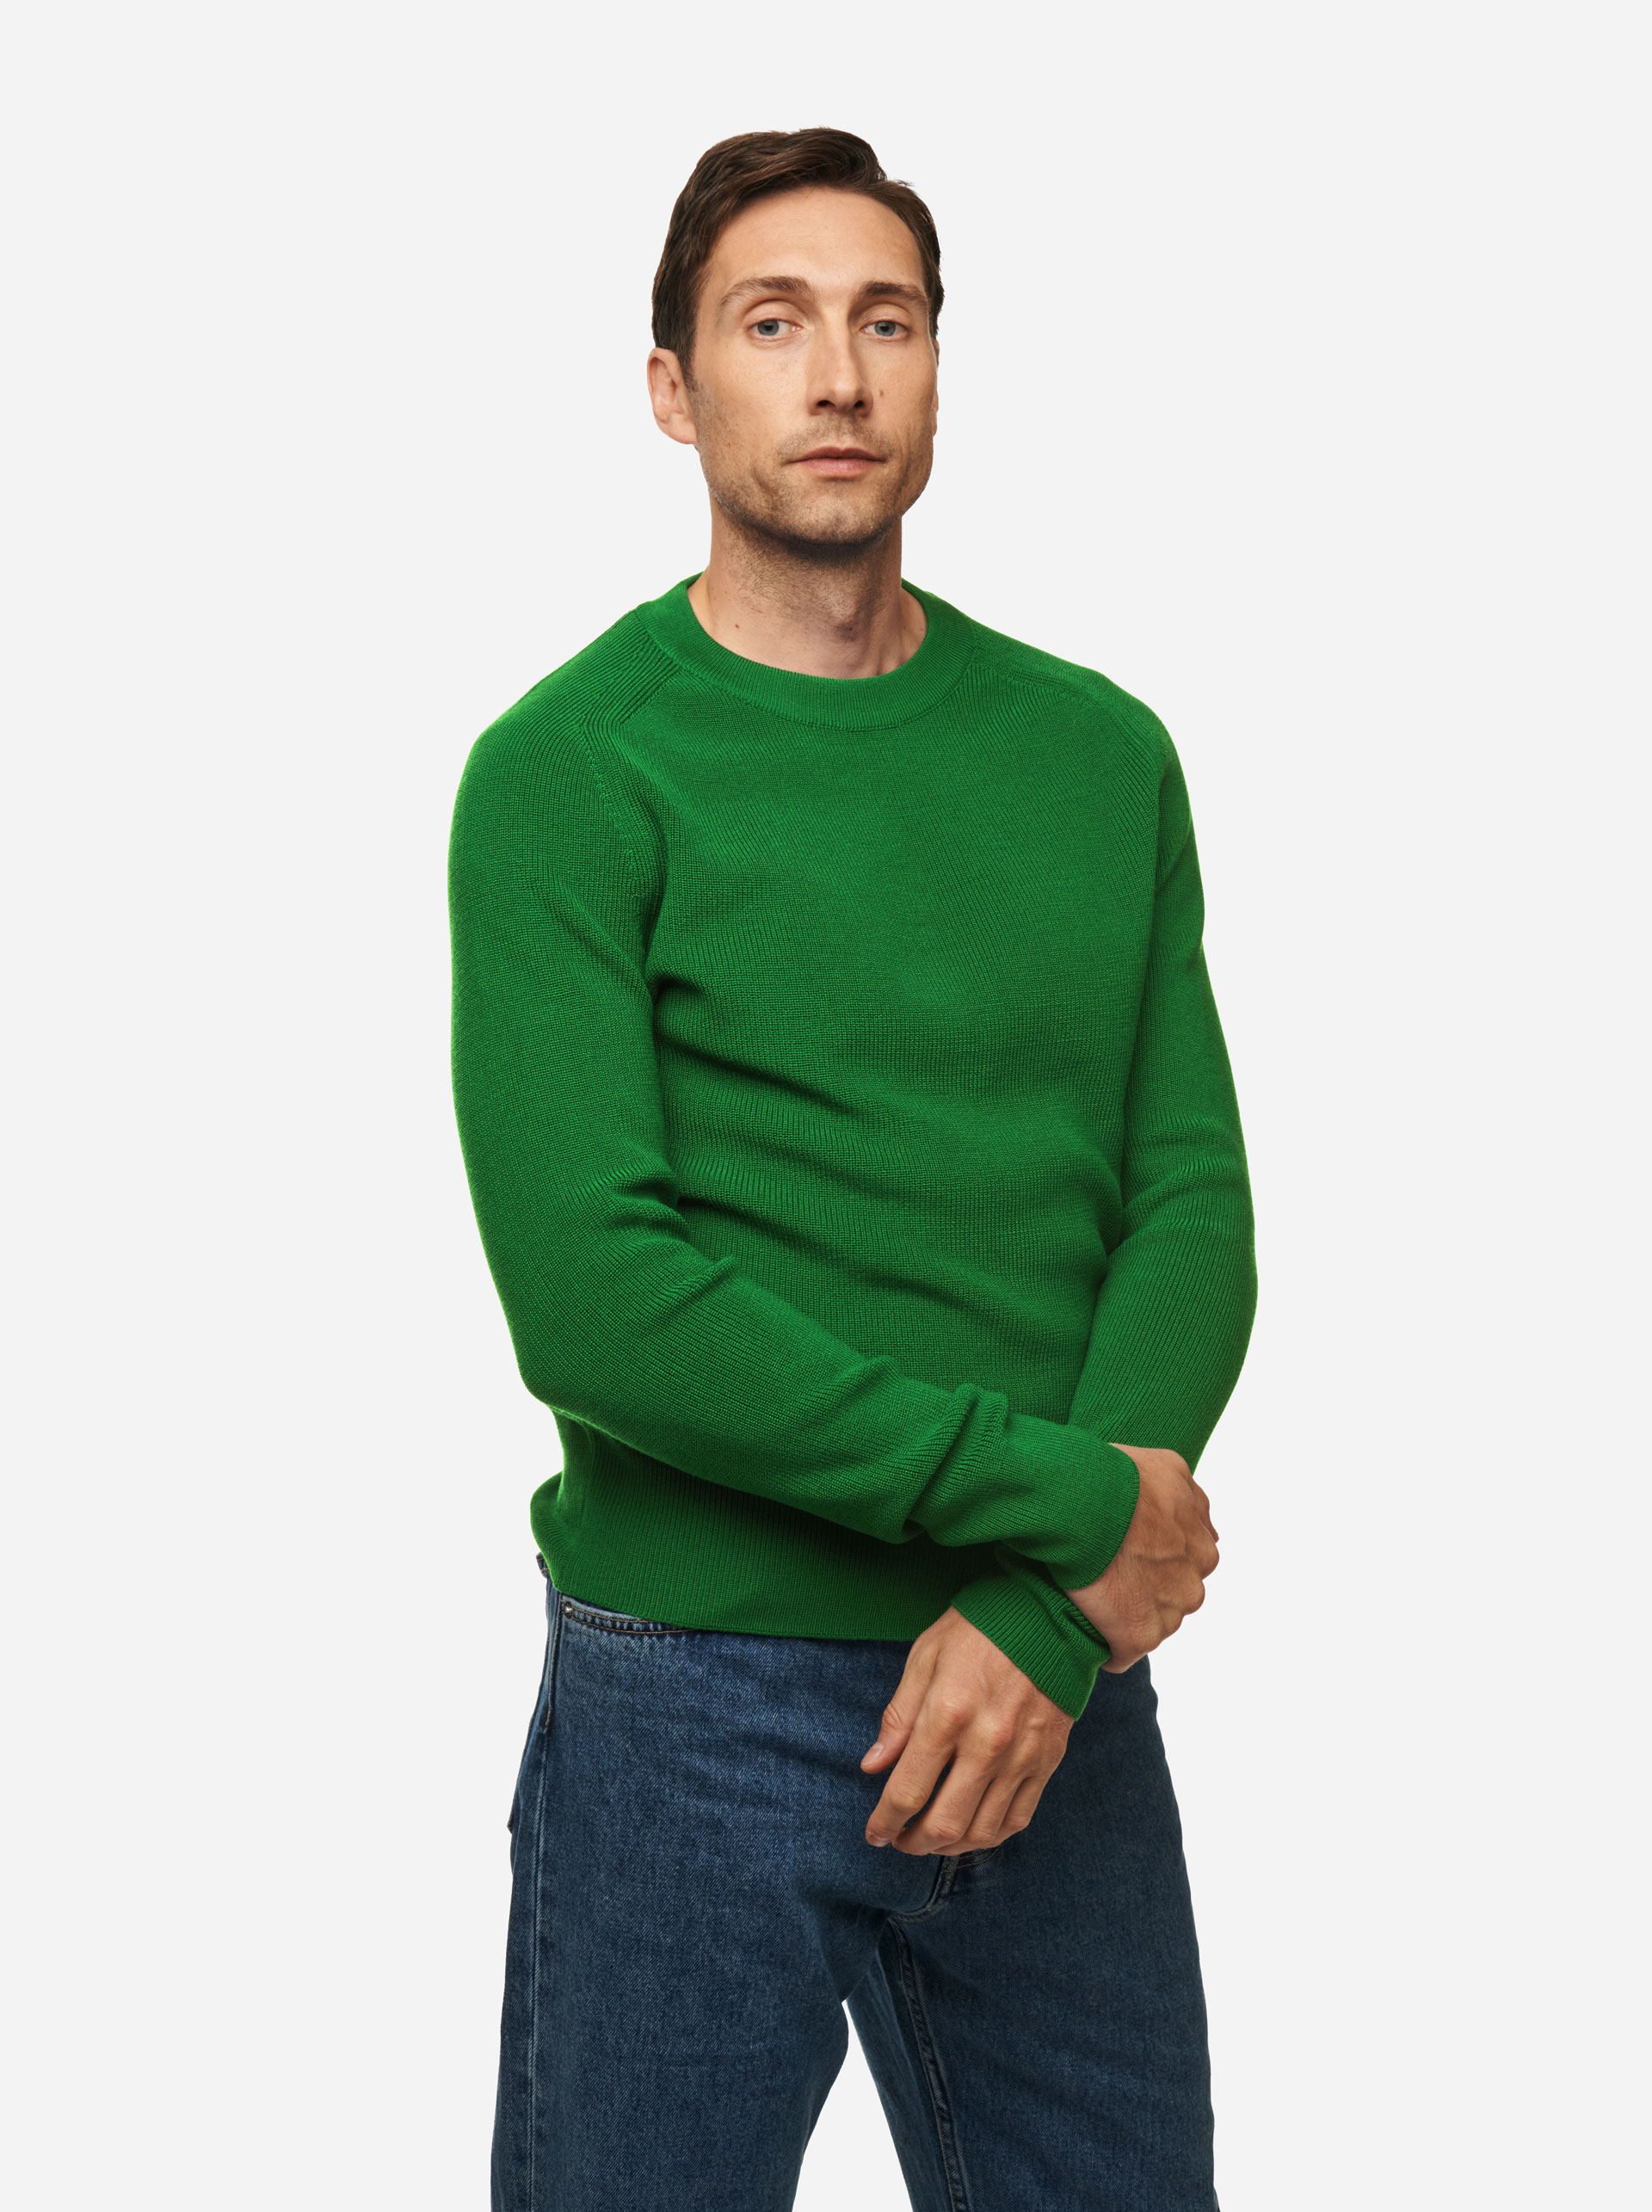 Teym - The Merino Sweater - Men - Bright Green - 3